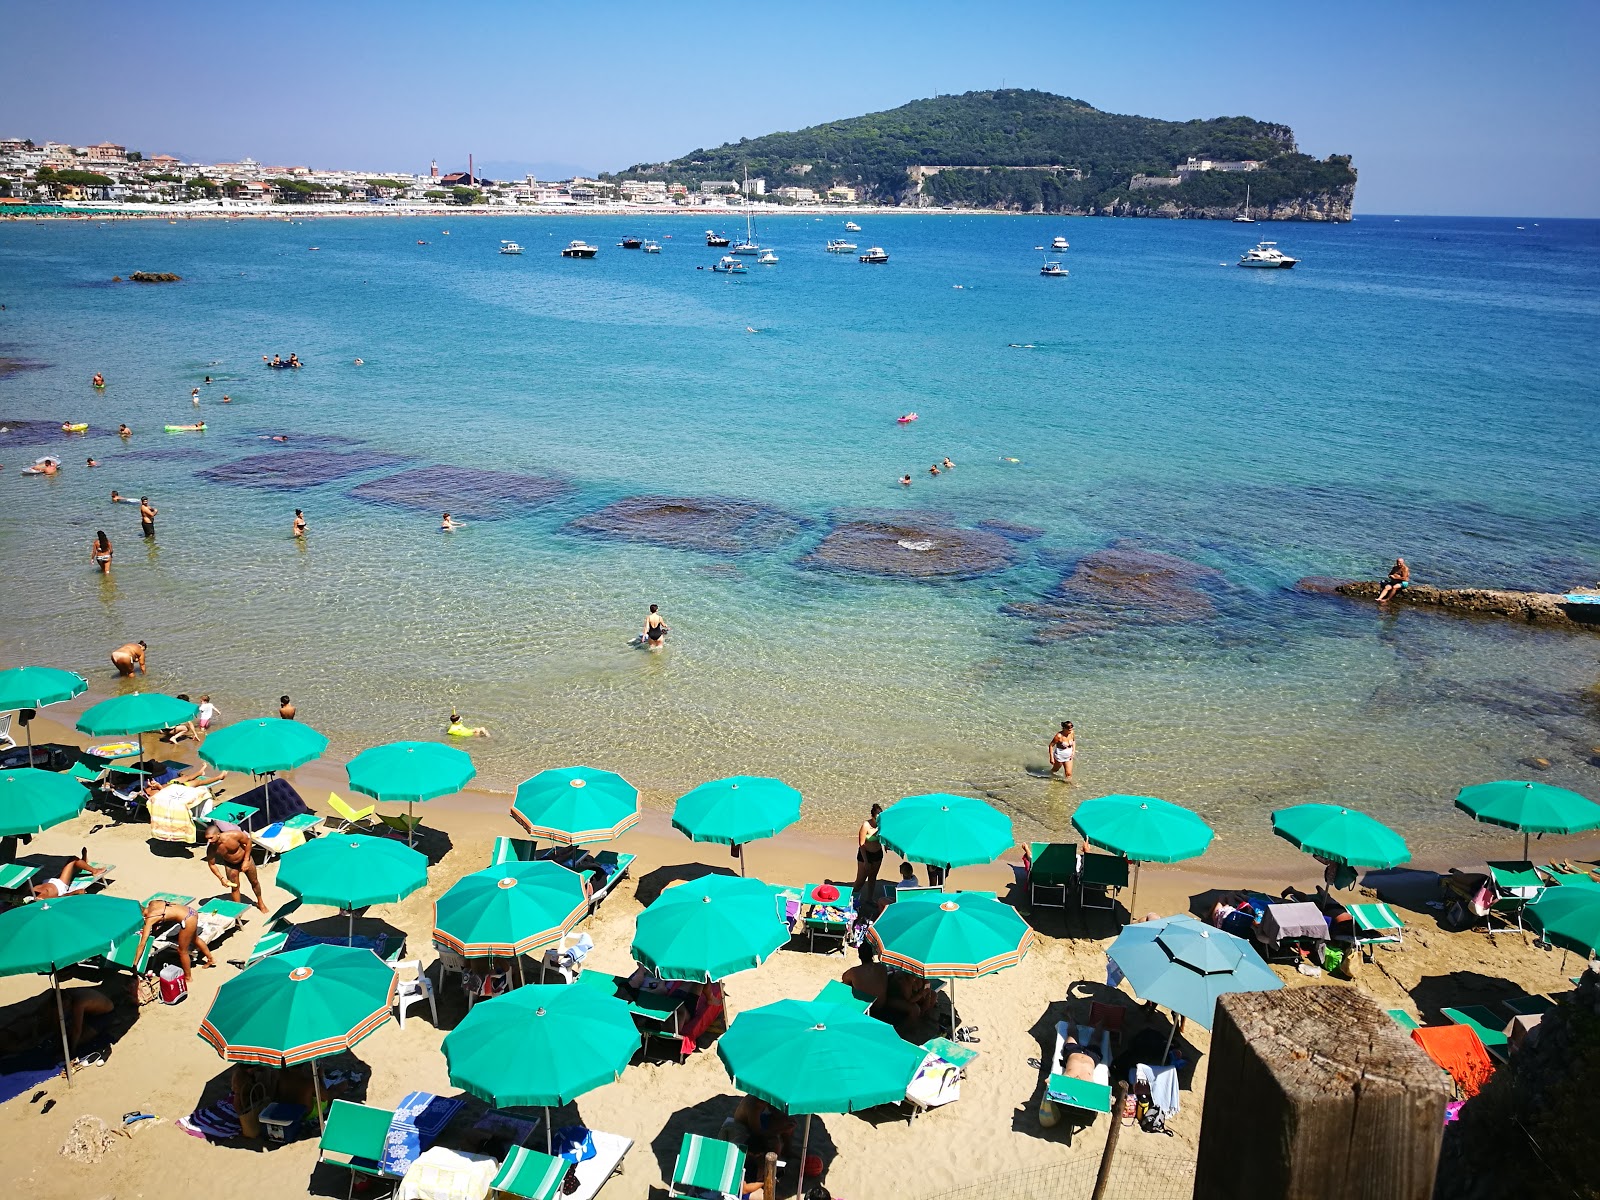 Spiaggia di Fontania'in fotoğrafı i̇nce kahverengi kum yüzey ile